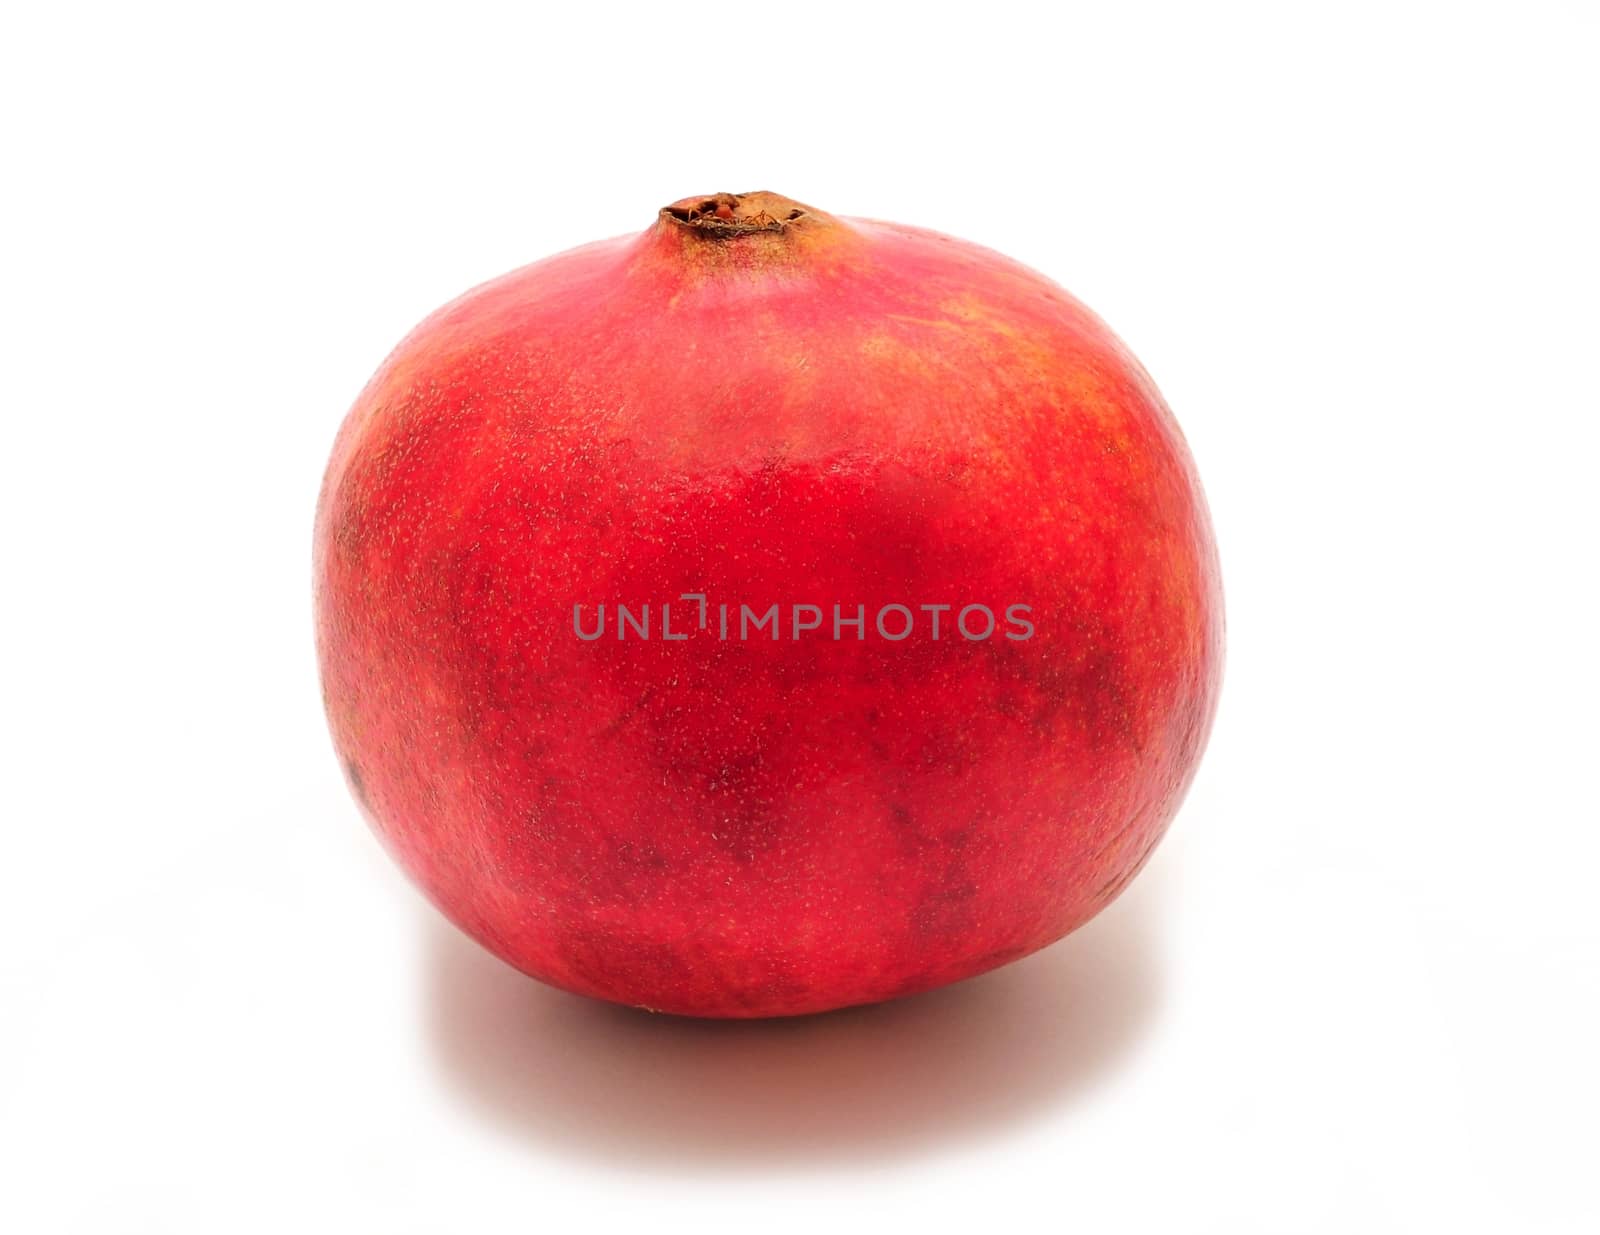 Whole pomegranate on white background by hamik